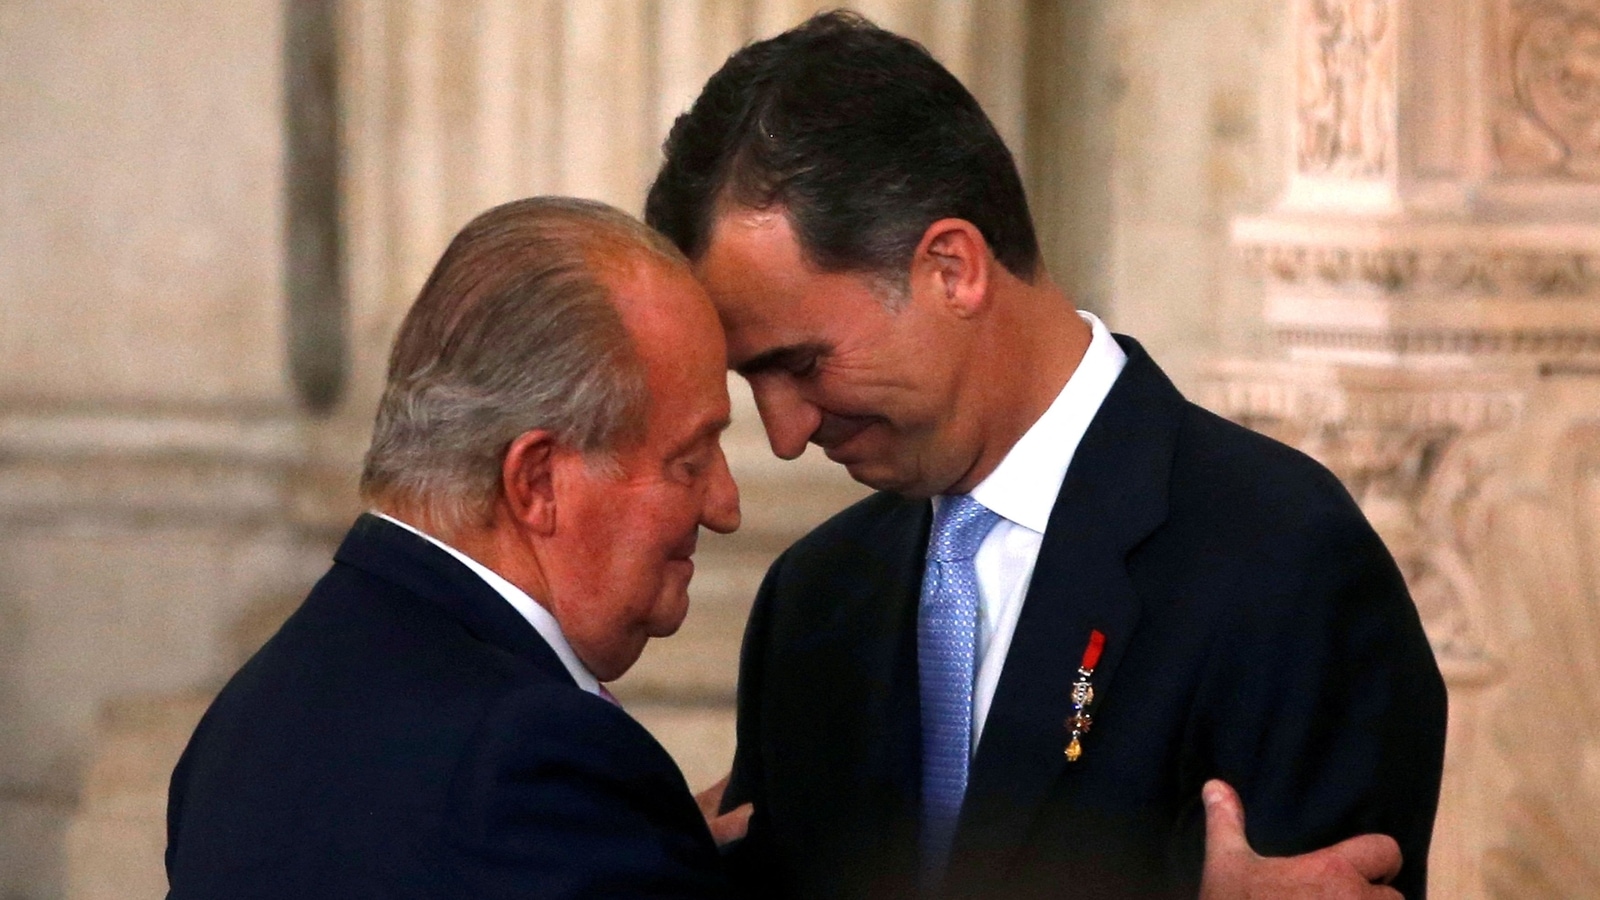 El ex rey de España regresó brevemente a España desde el exilio | DayDayNews World News